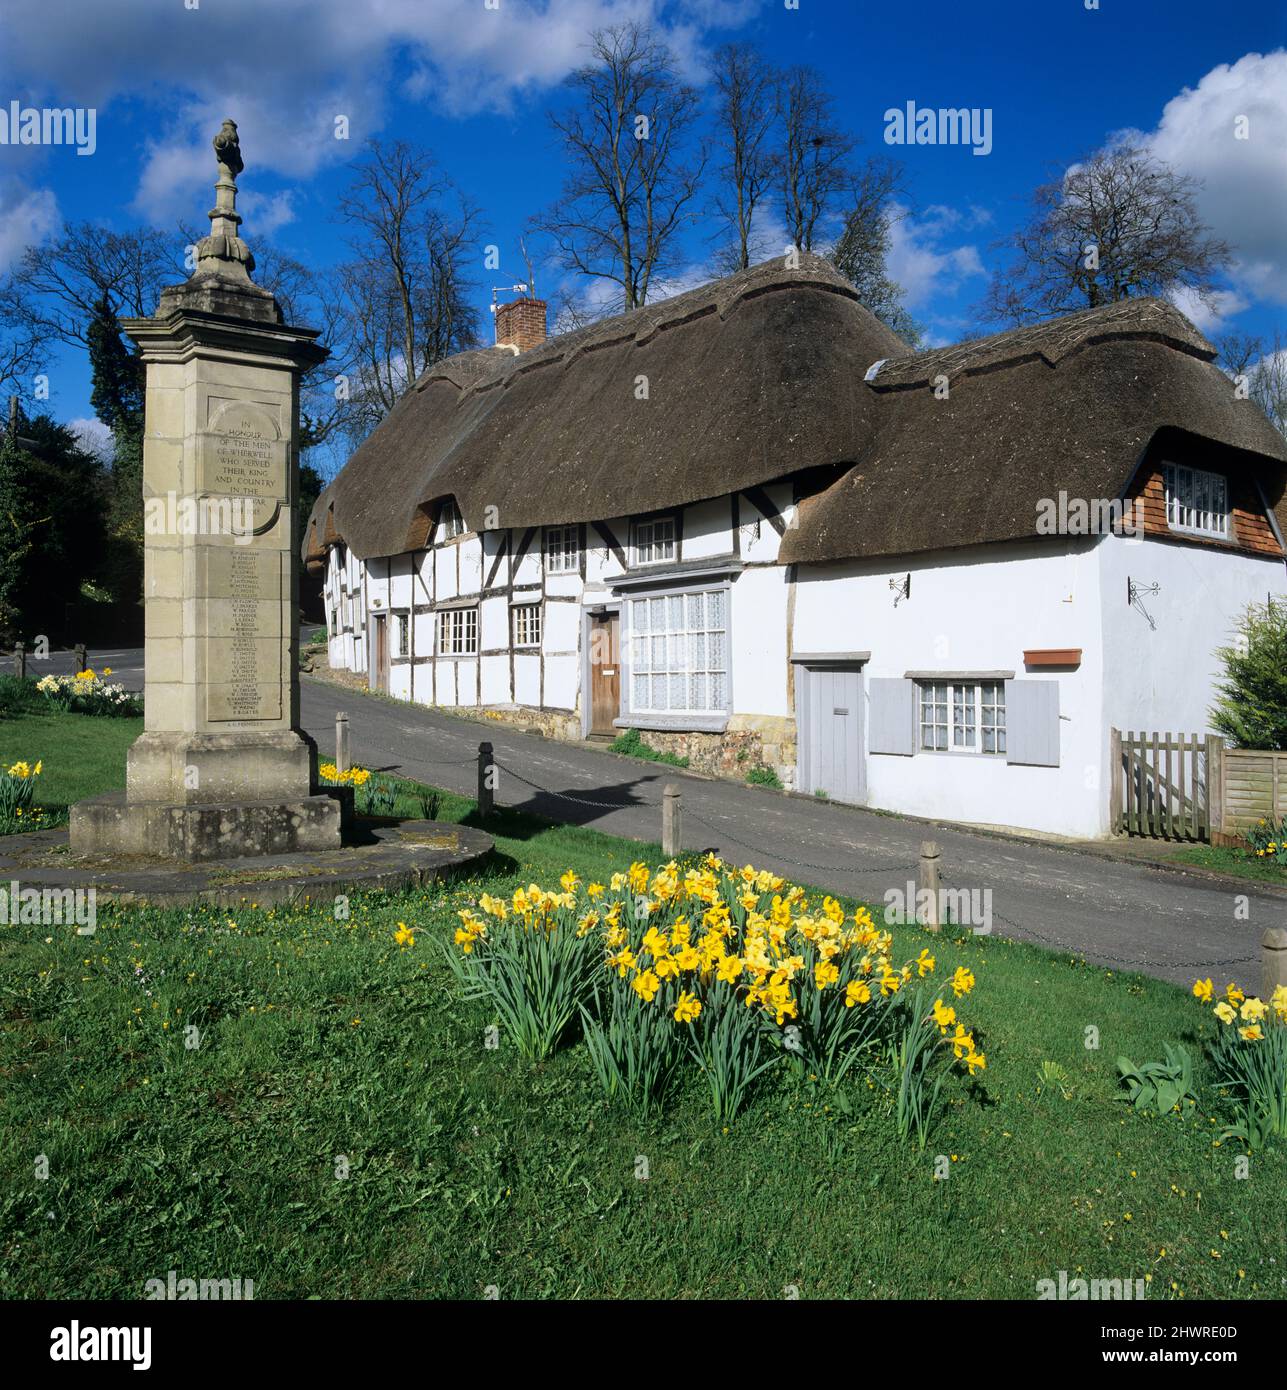 Jonquilles sur le village vert avec le mémorial de guerre, Wherwell, Hampshire, Angleterre, Royaume-Uni, Europe Banque D'Images